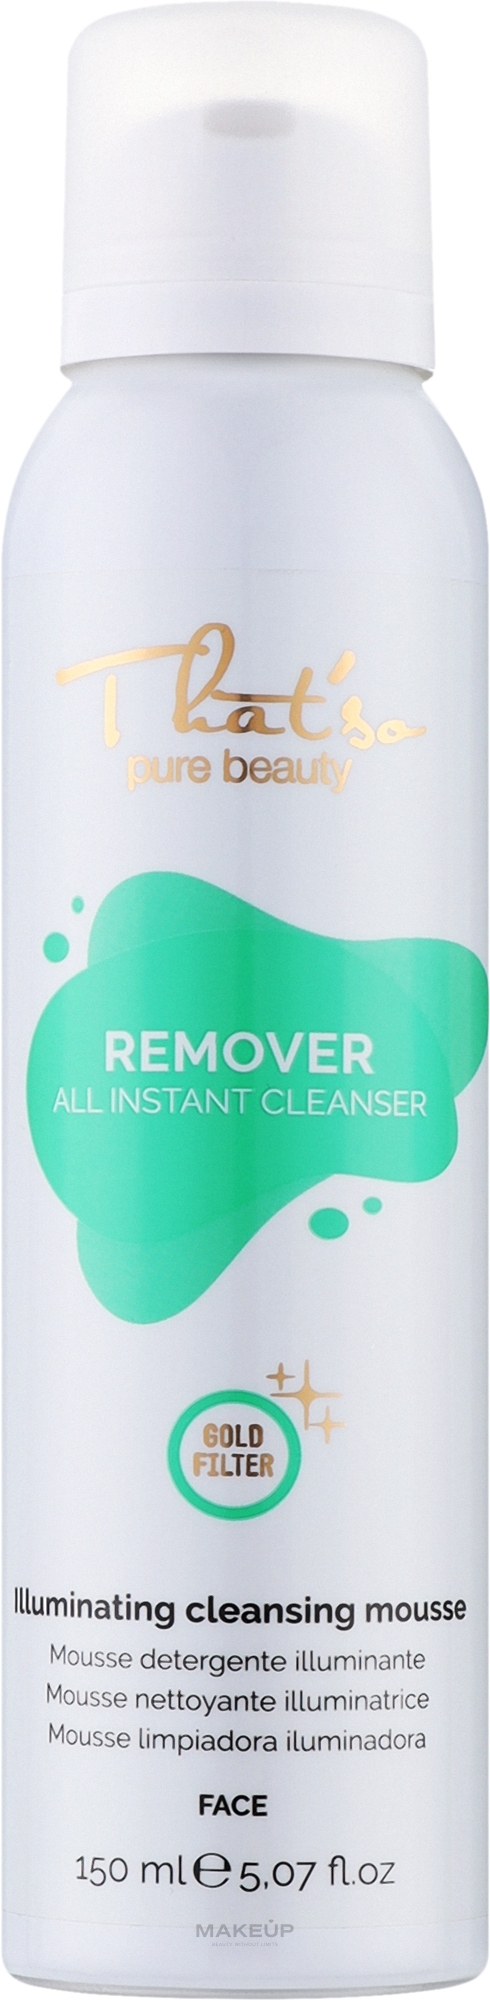 Błyskawicznie oczyszczający żel do mycia - That'So Remover All Instant Cleanser Face — Zdjęcie 150 ml